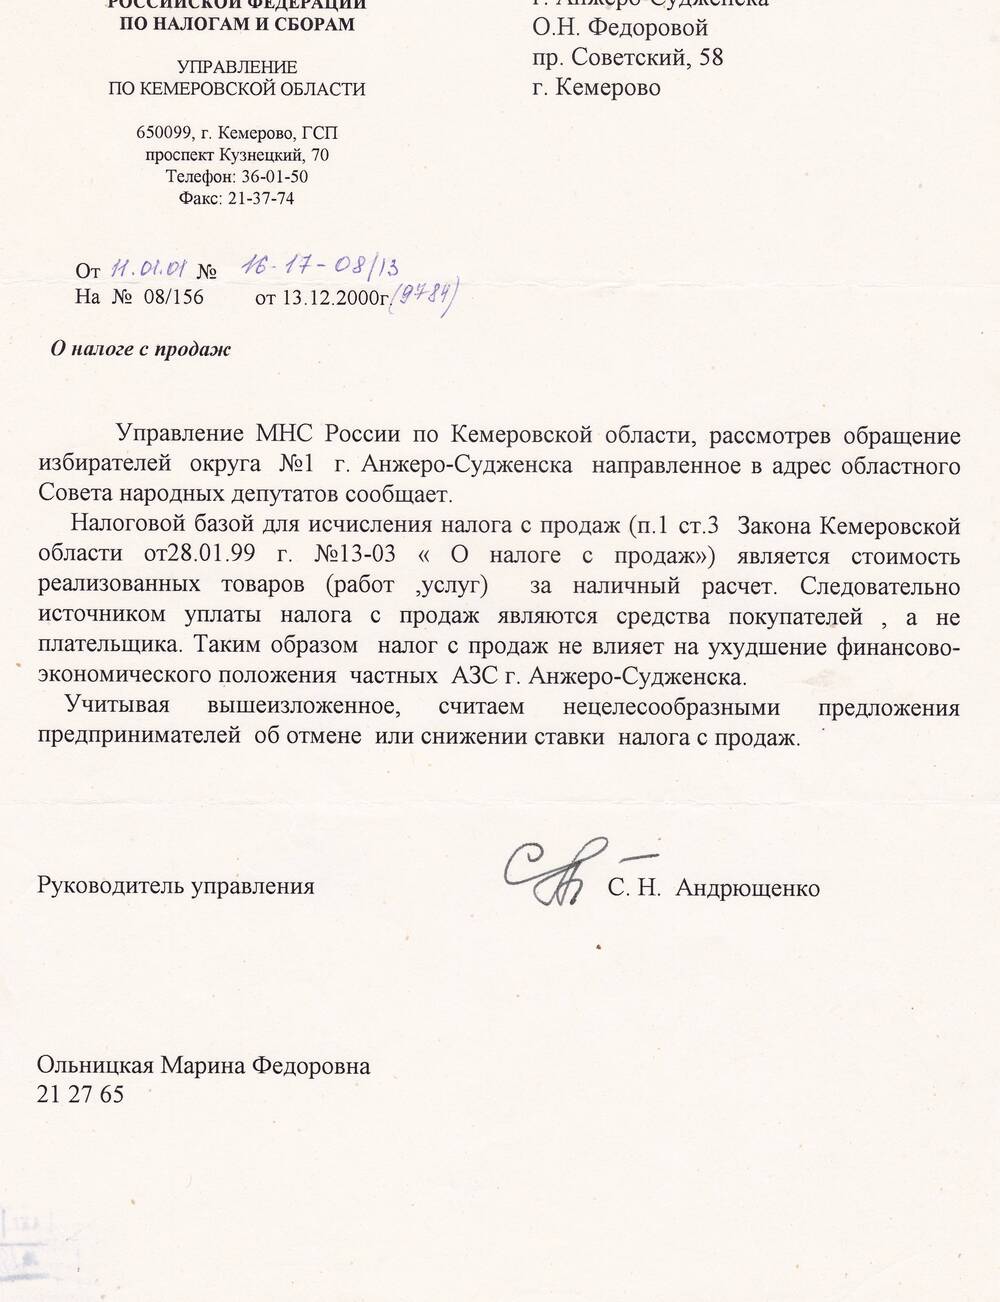 Ответ руководителя управления по налогам и сборам С.Н. Андрюшенко